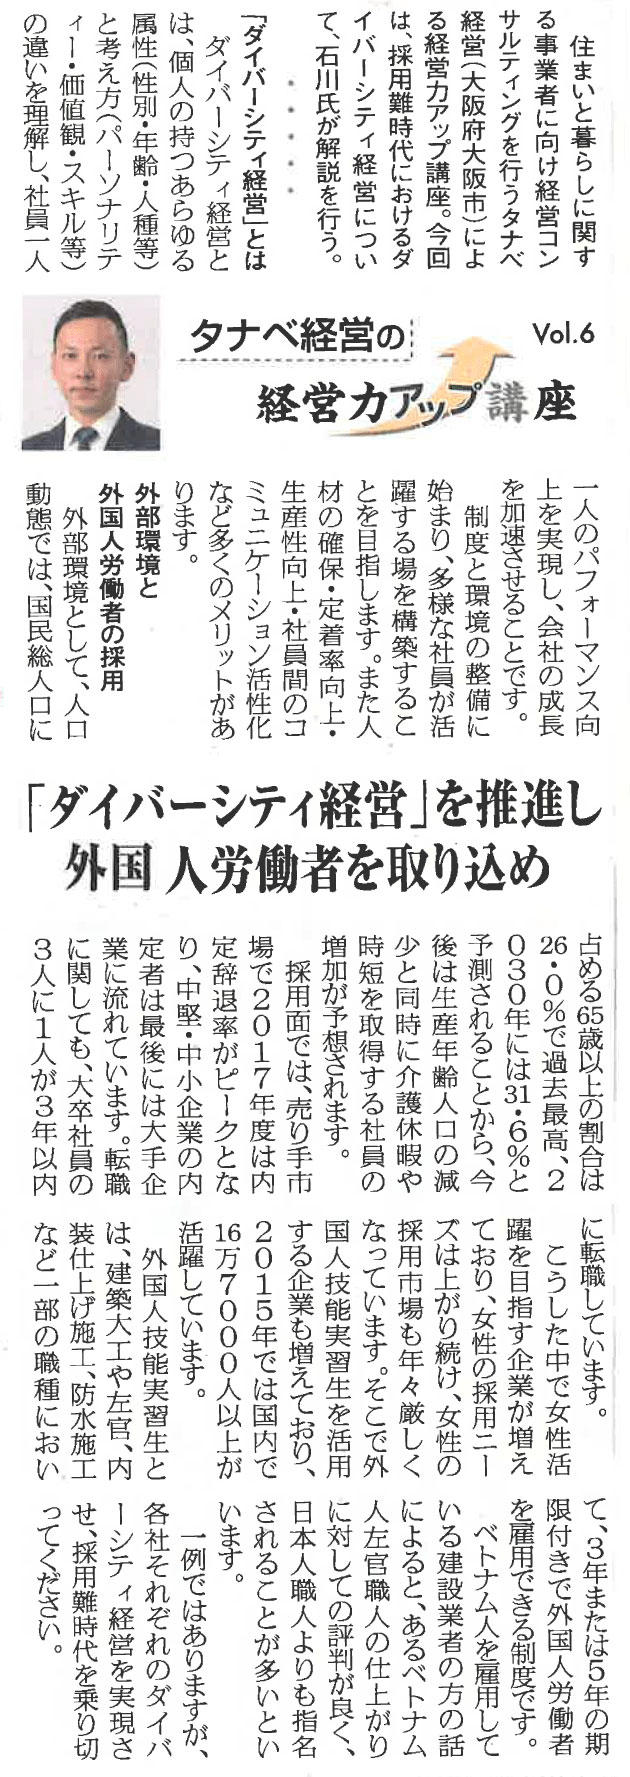 平成30年9月3日付 リフォーム産業新聞